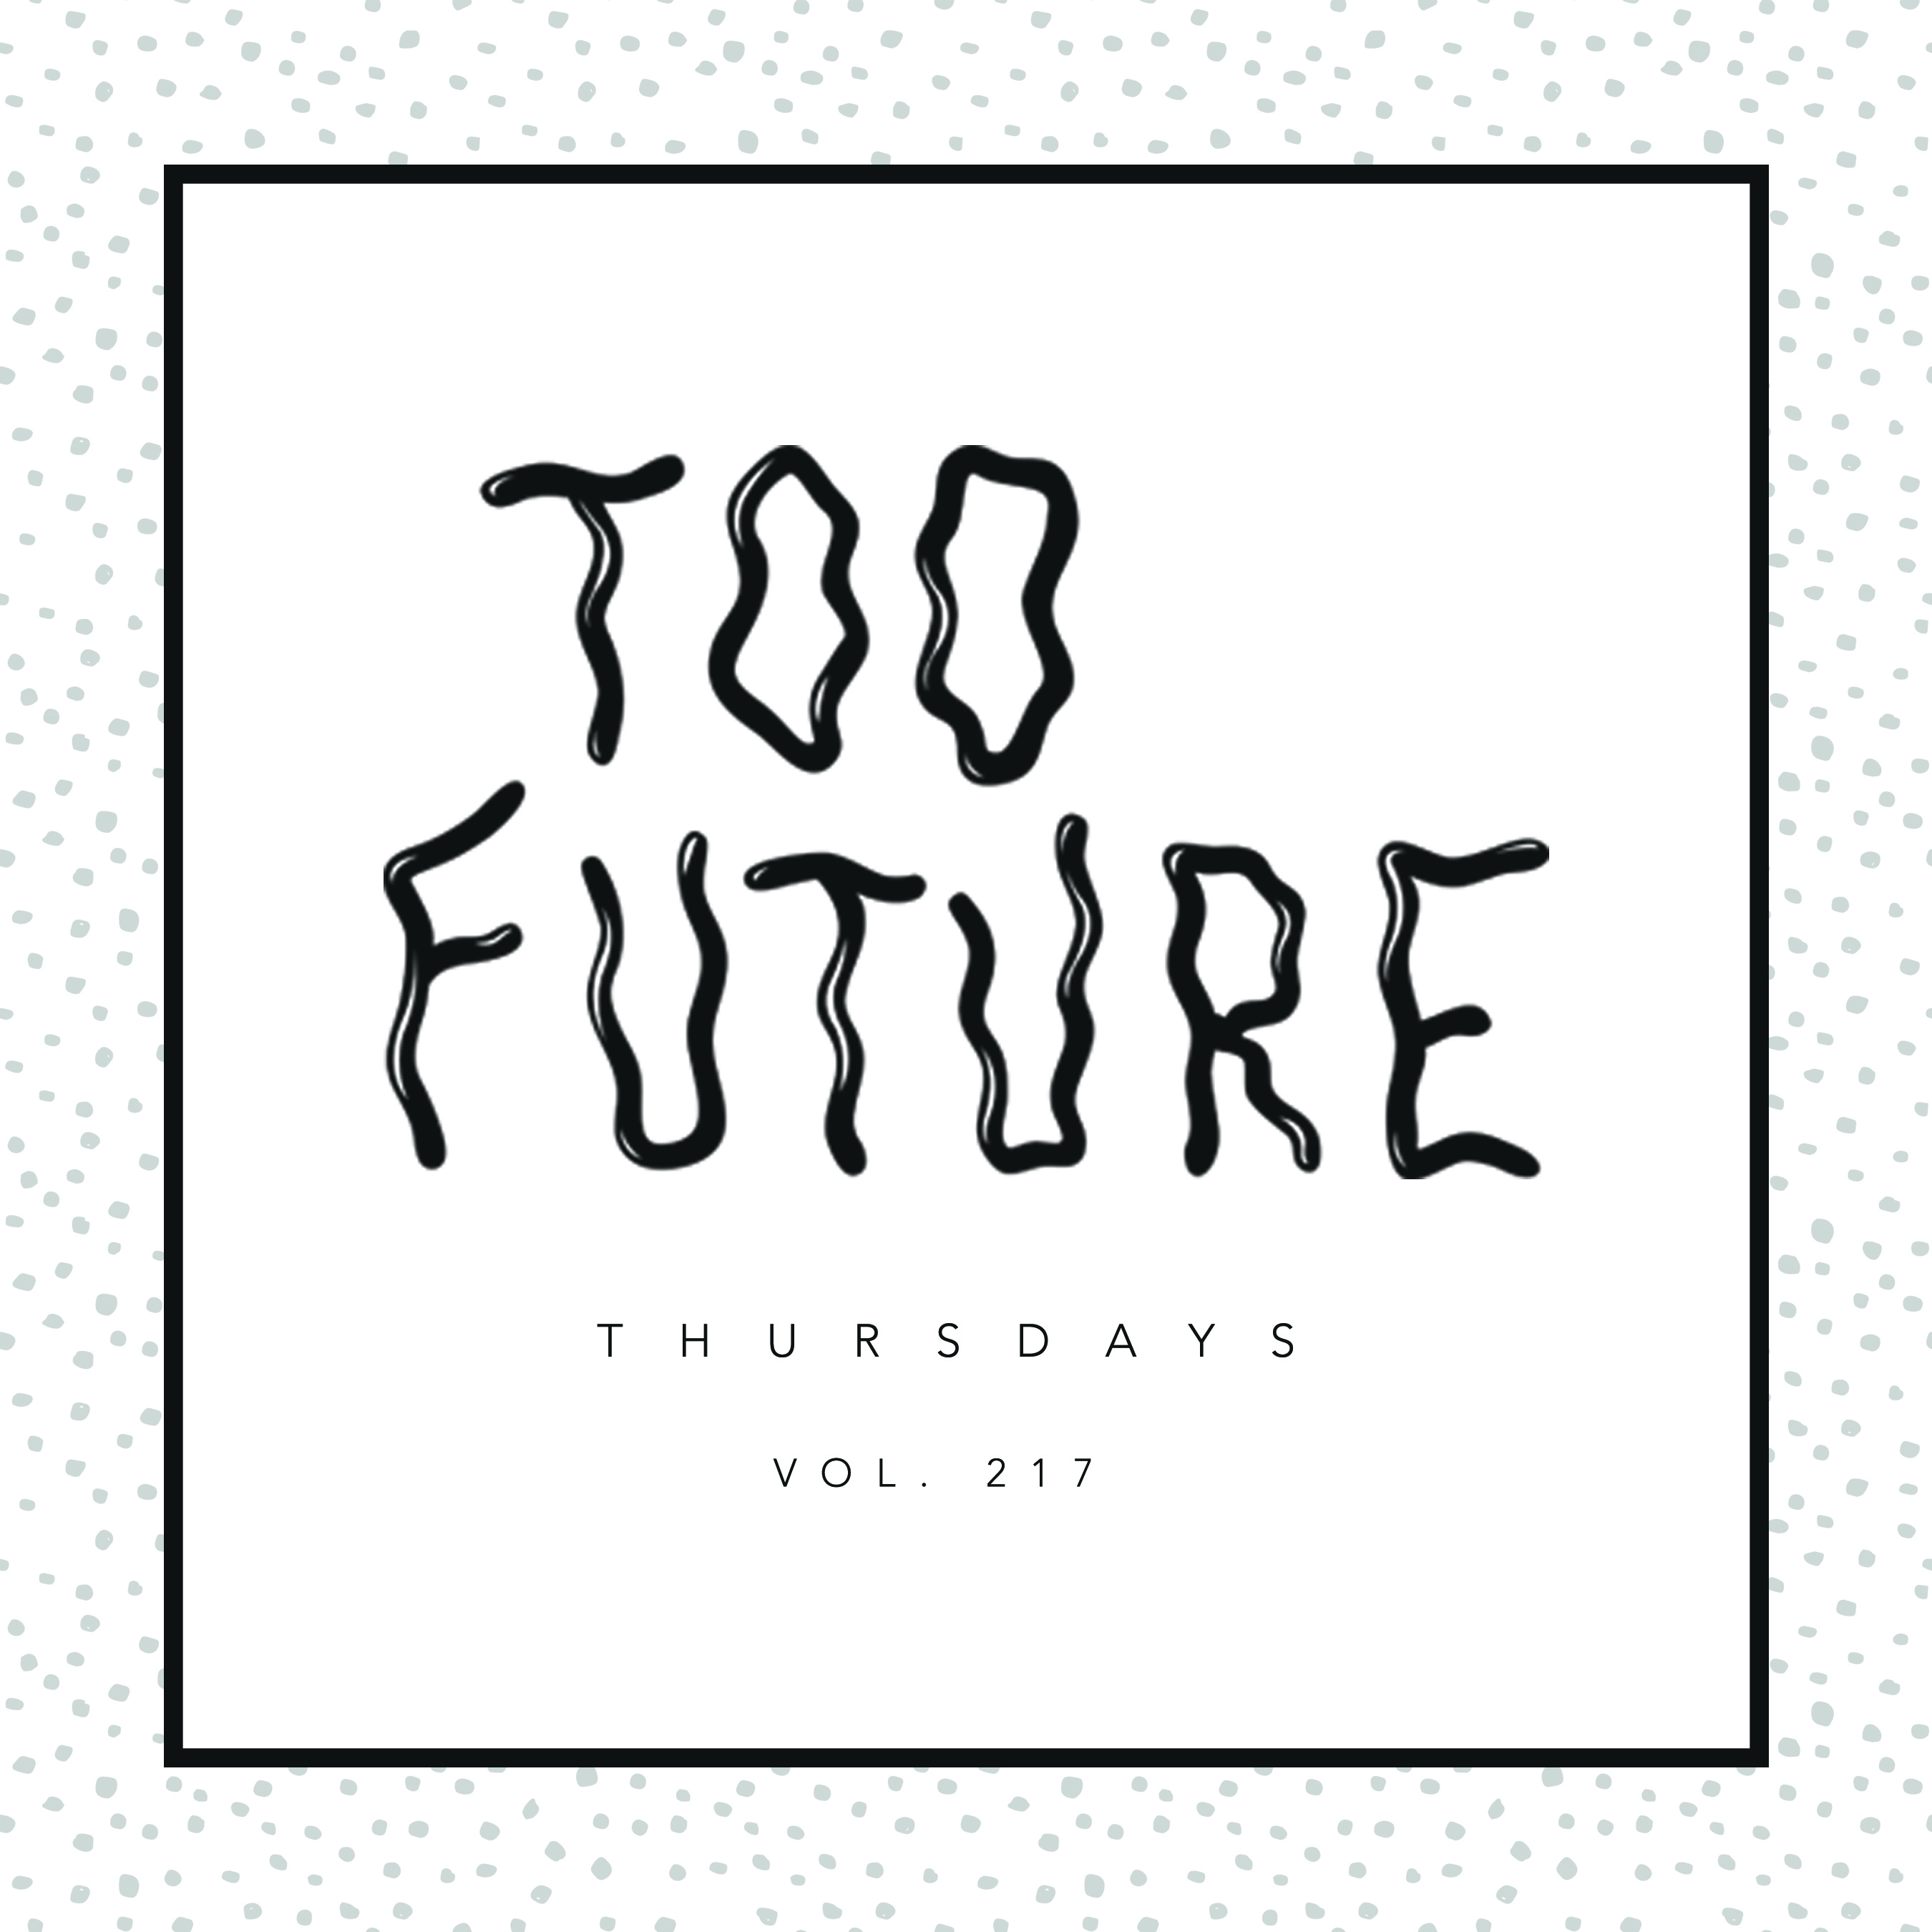 too-future-thursdays-vol-217